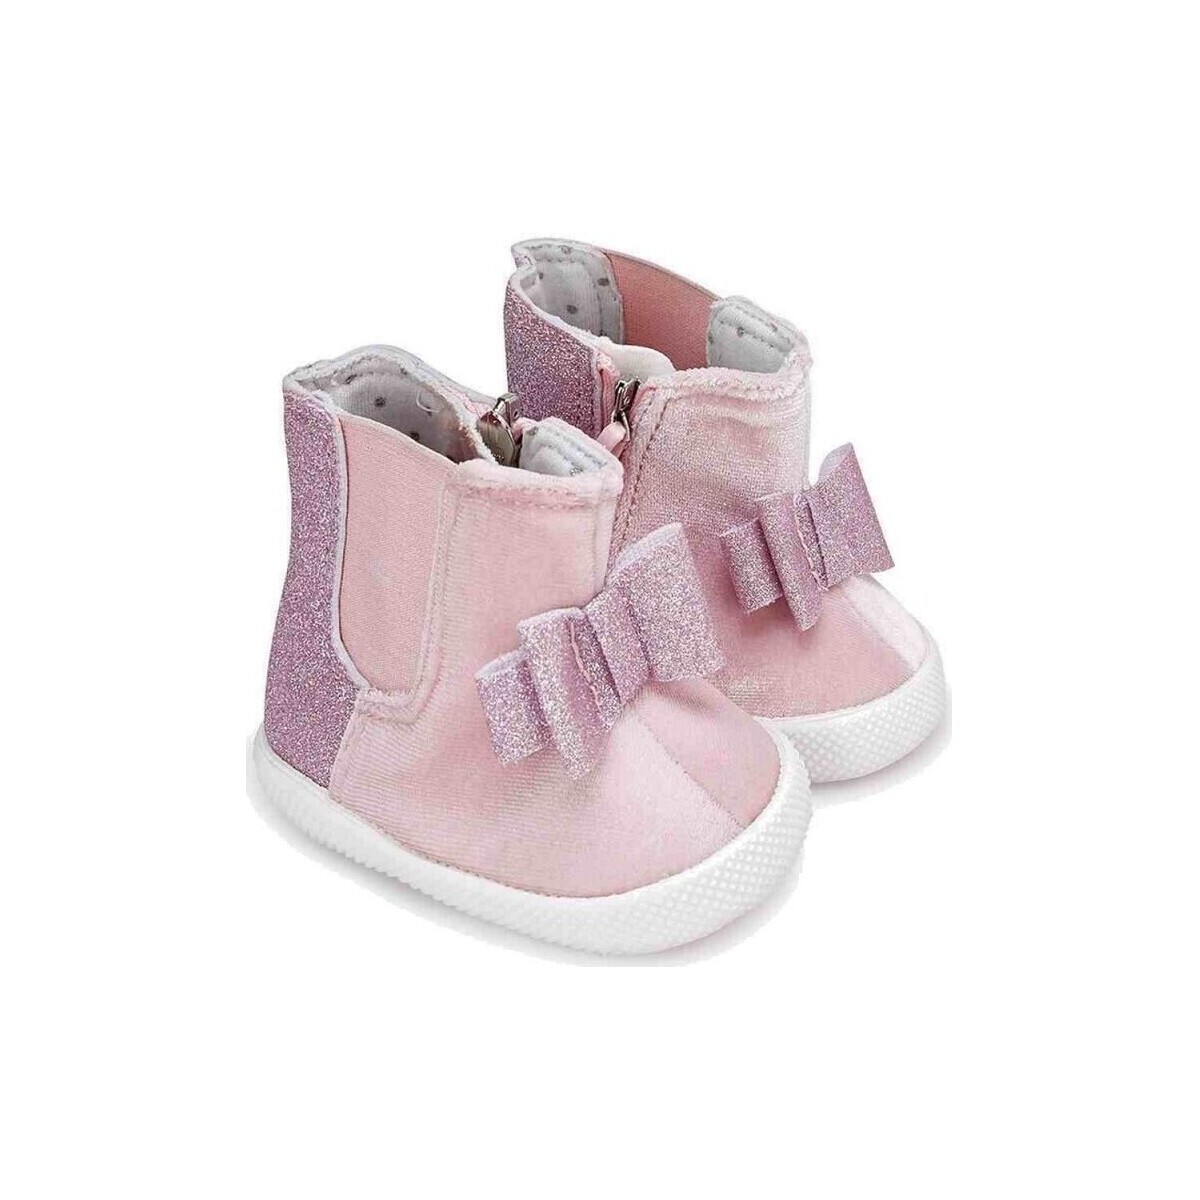 Schuhe Jungen Babyschuhe Mayoral 23256-15 Rosa